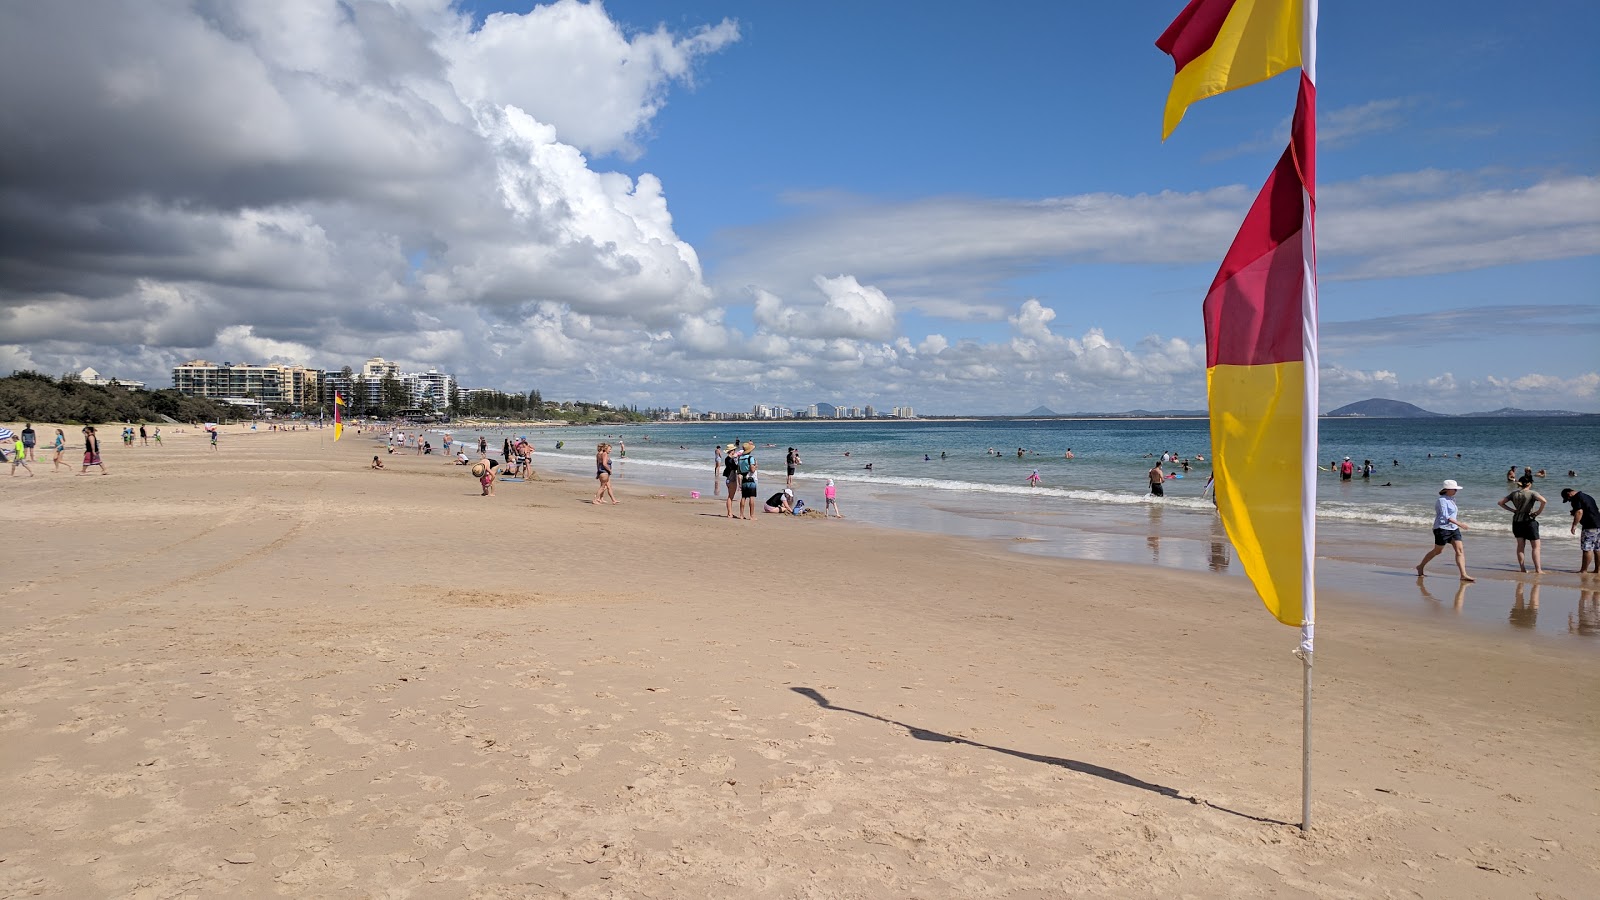 Mooloolaba Beach'in fotoğrafı - rahatlamayı sevenler arasında popüler bir yer